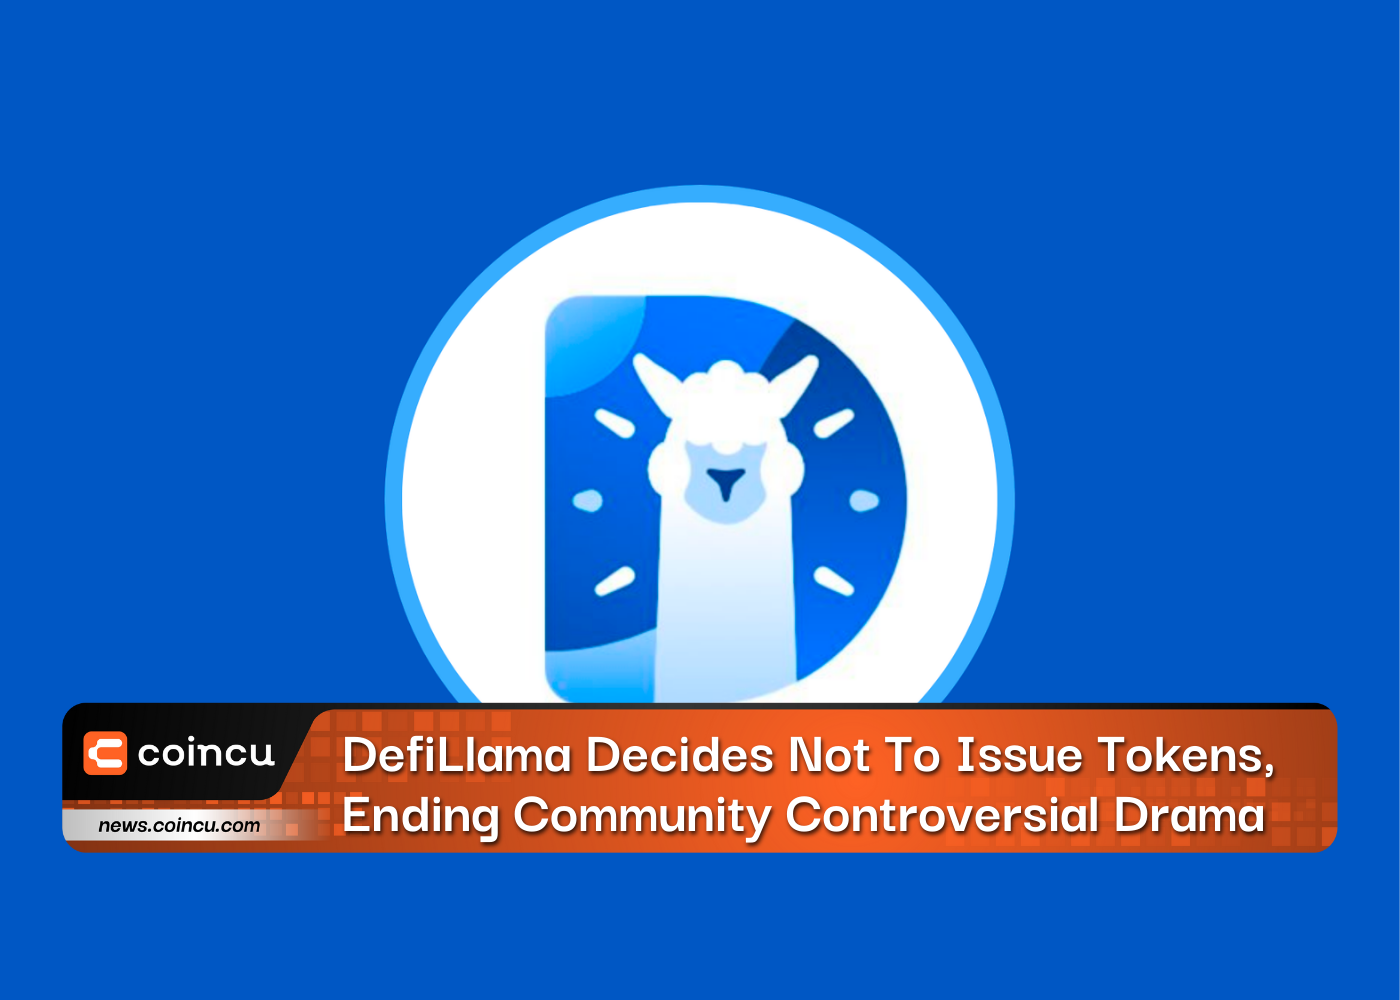 DefiLlama تقرر عدم إصدار الرموز، وإنهاء الدراما المثيرة للجدل في المجتمع